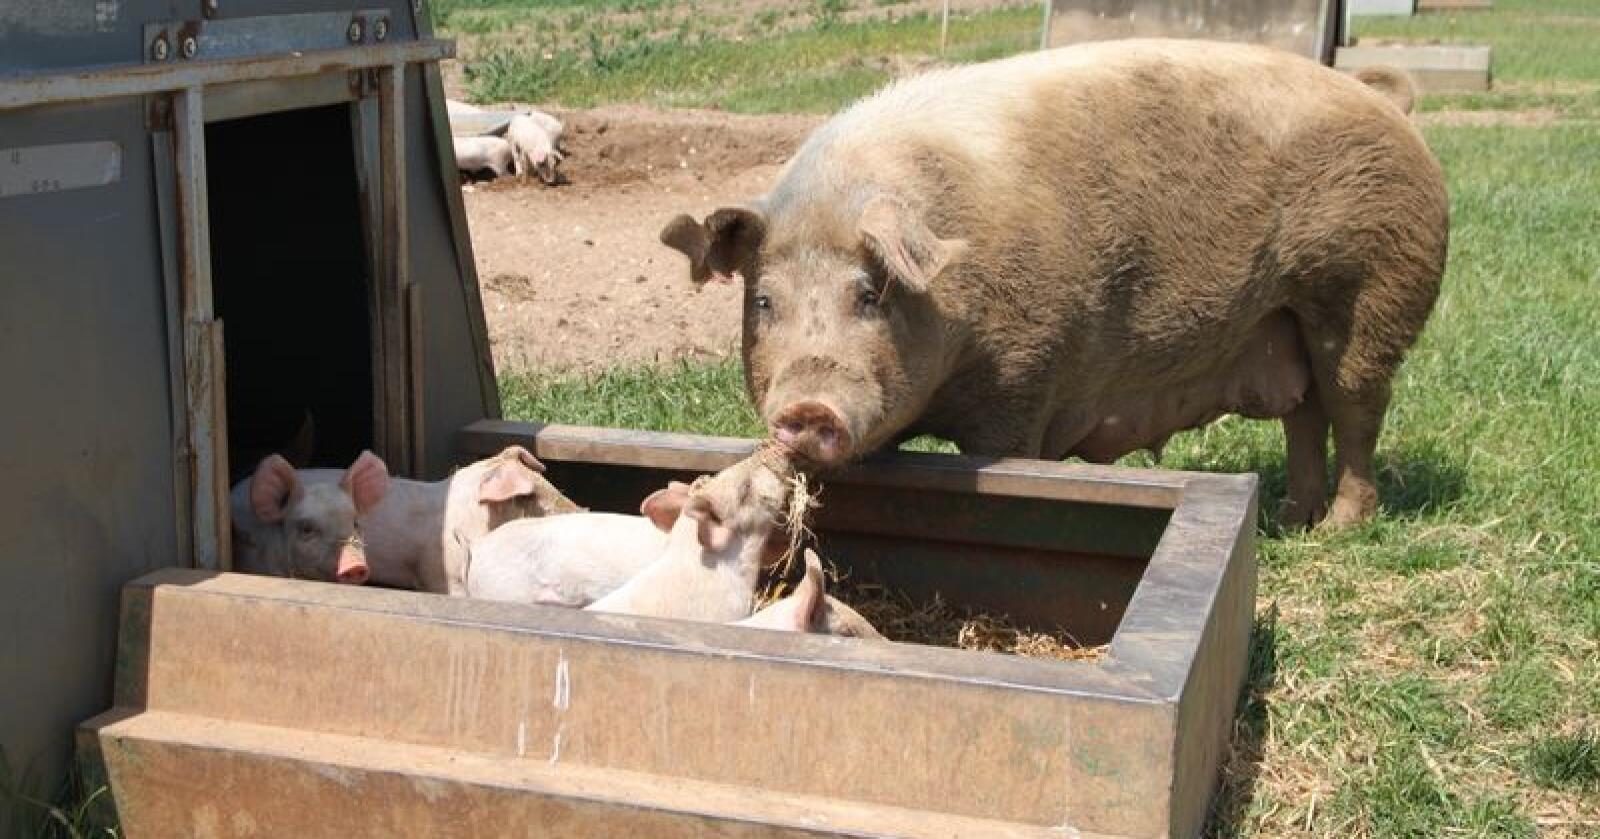 Kina er fra før Storbritannias største marked for eksport av svinekjøtt. Men etterspørselen etter griselabber, ellers svineføtter, er noe nytt. På bildet sees britisk frilandsgris. Illustrasjonsfoto: Øystein Heggdal/Norsk Landbruk